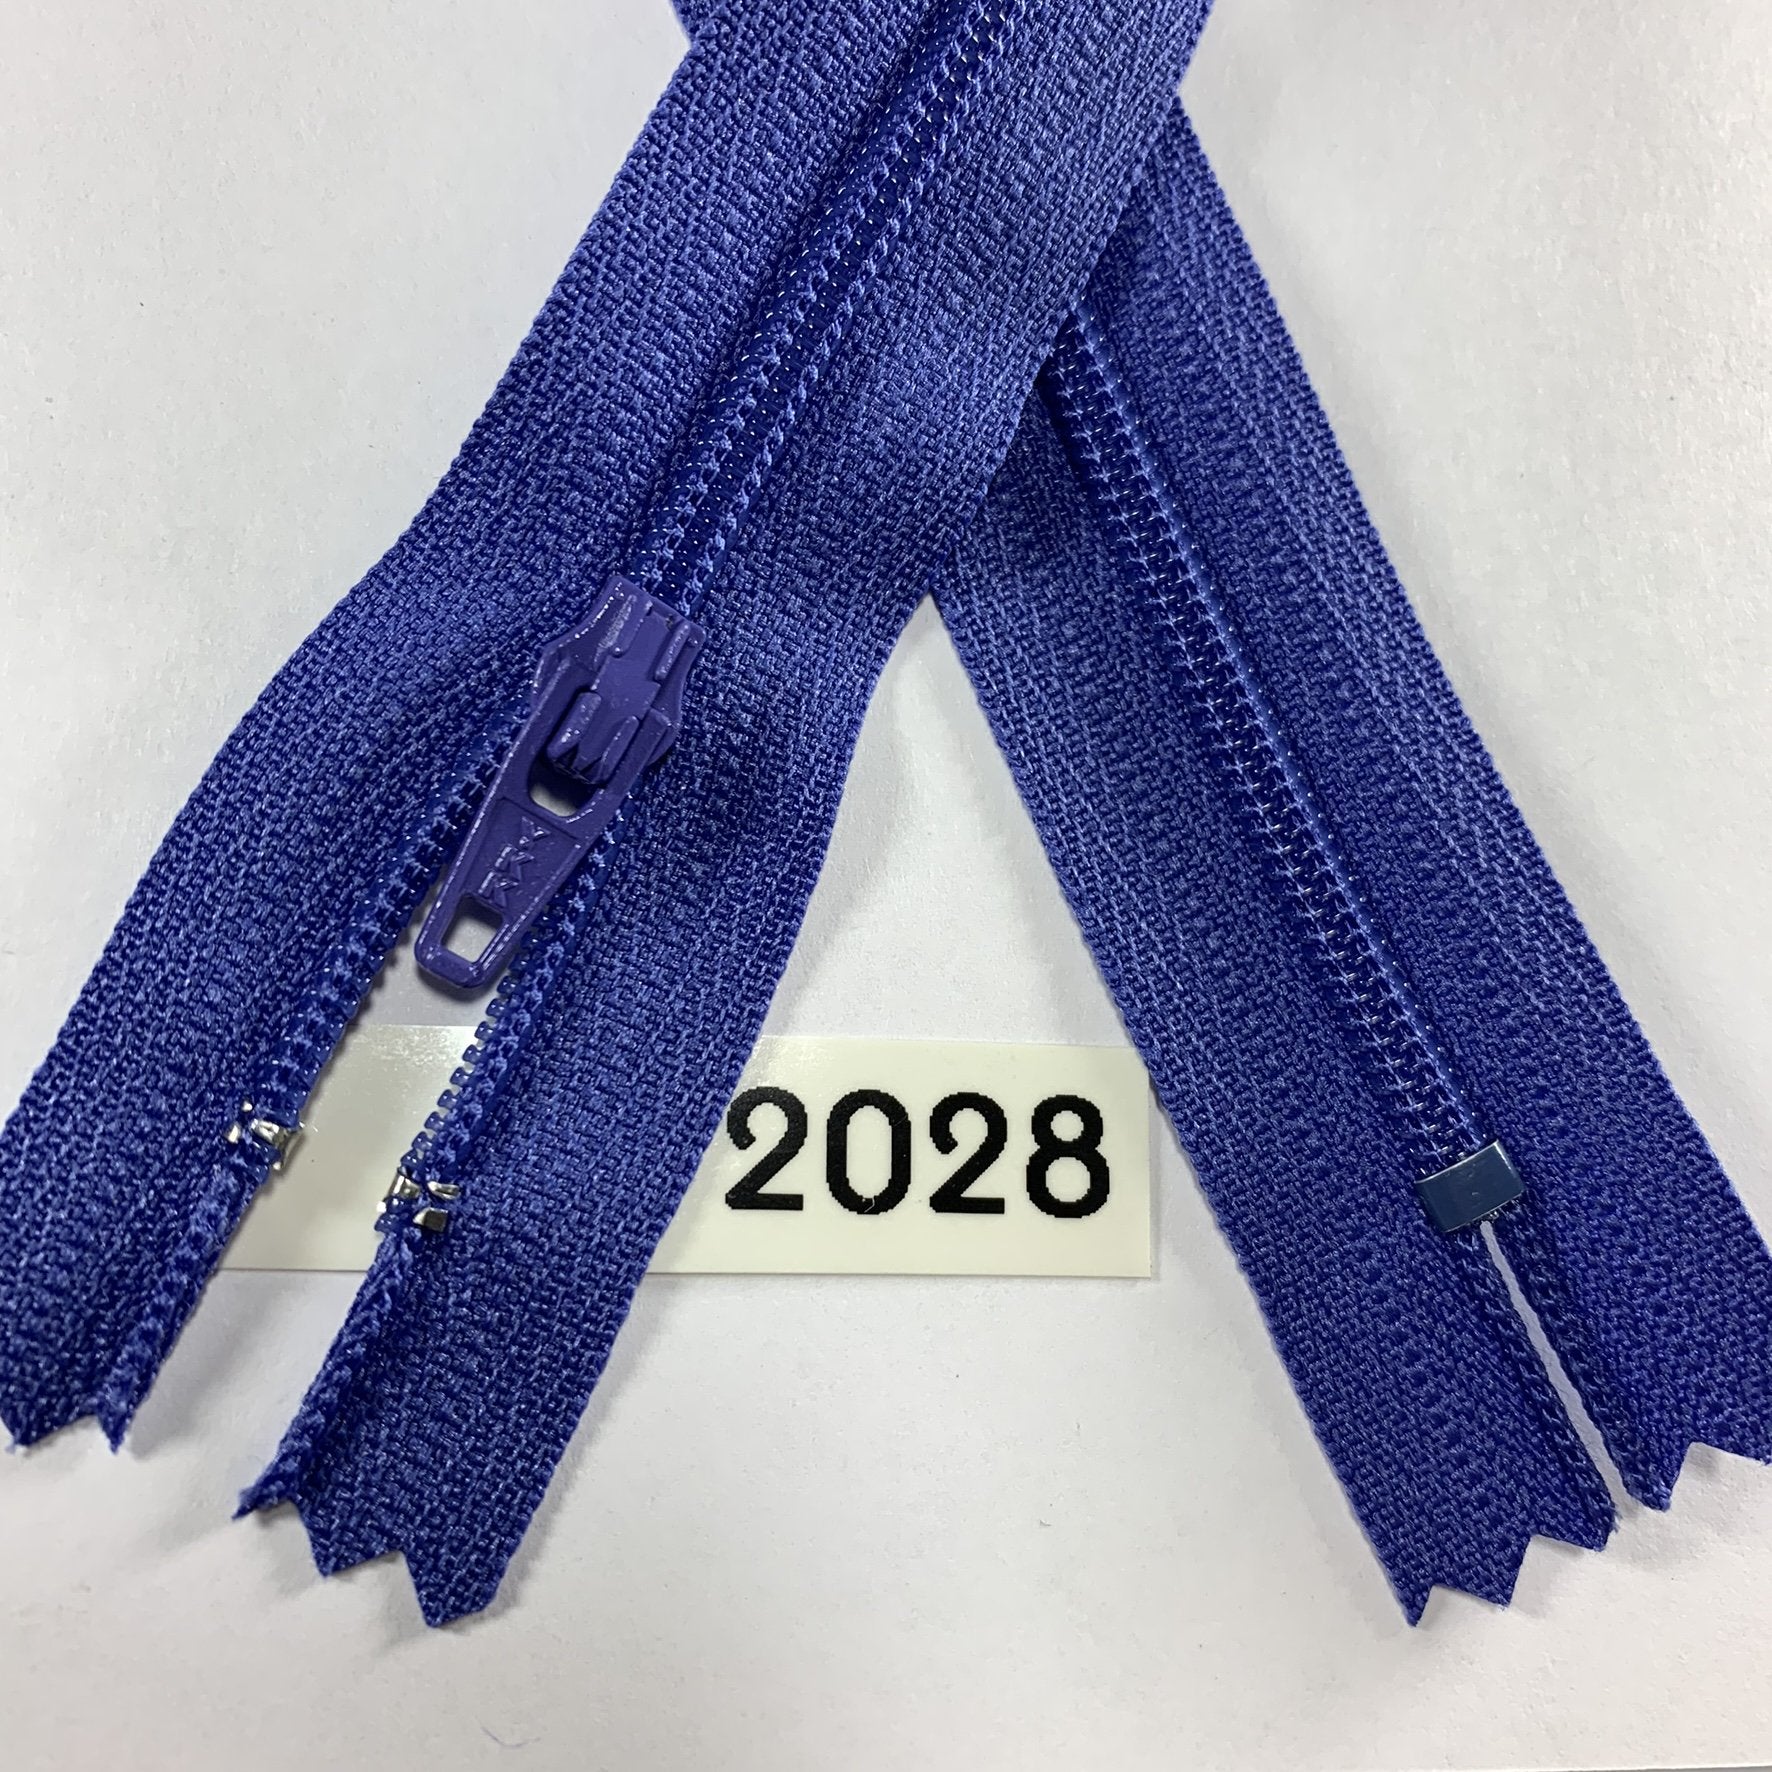 YKK-02028 Exclusive Med Violet Blue